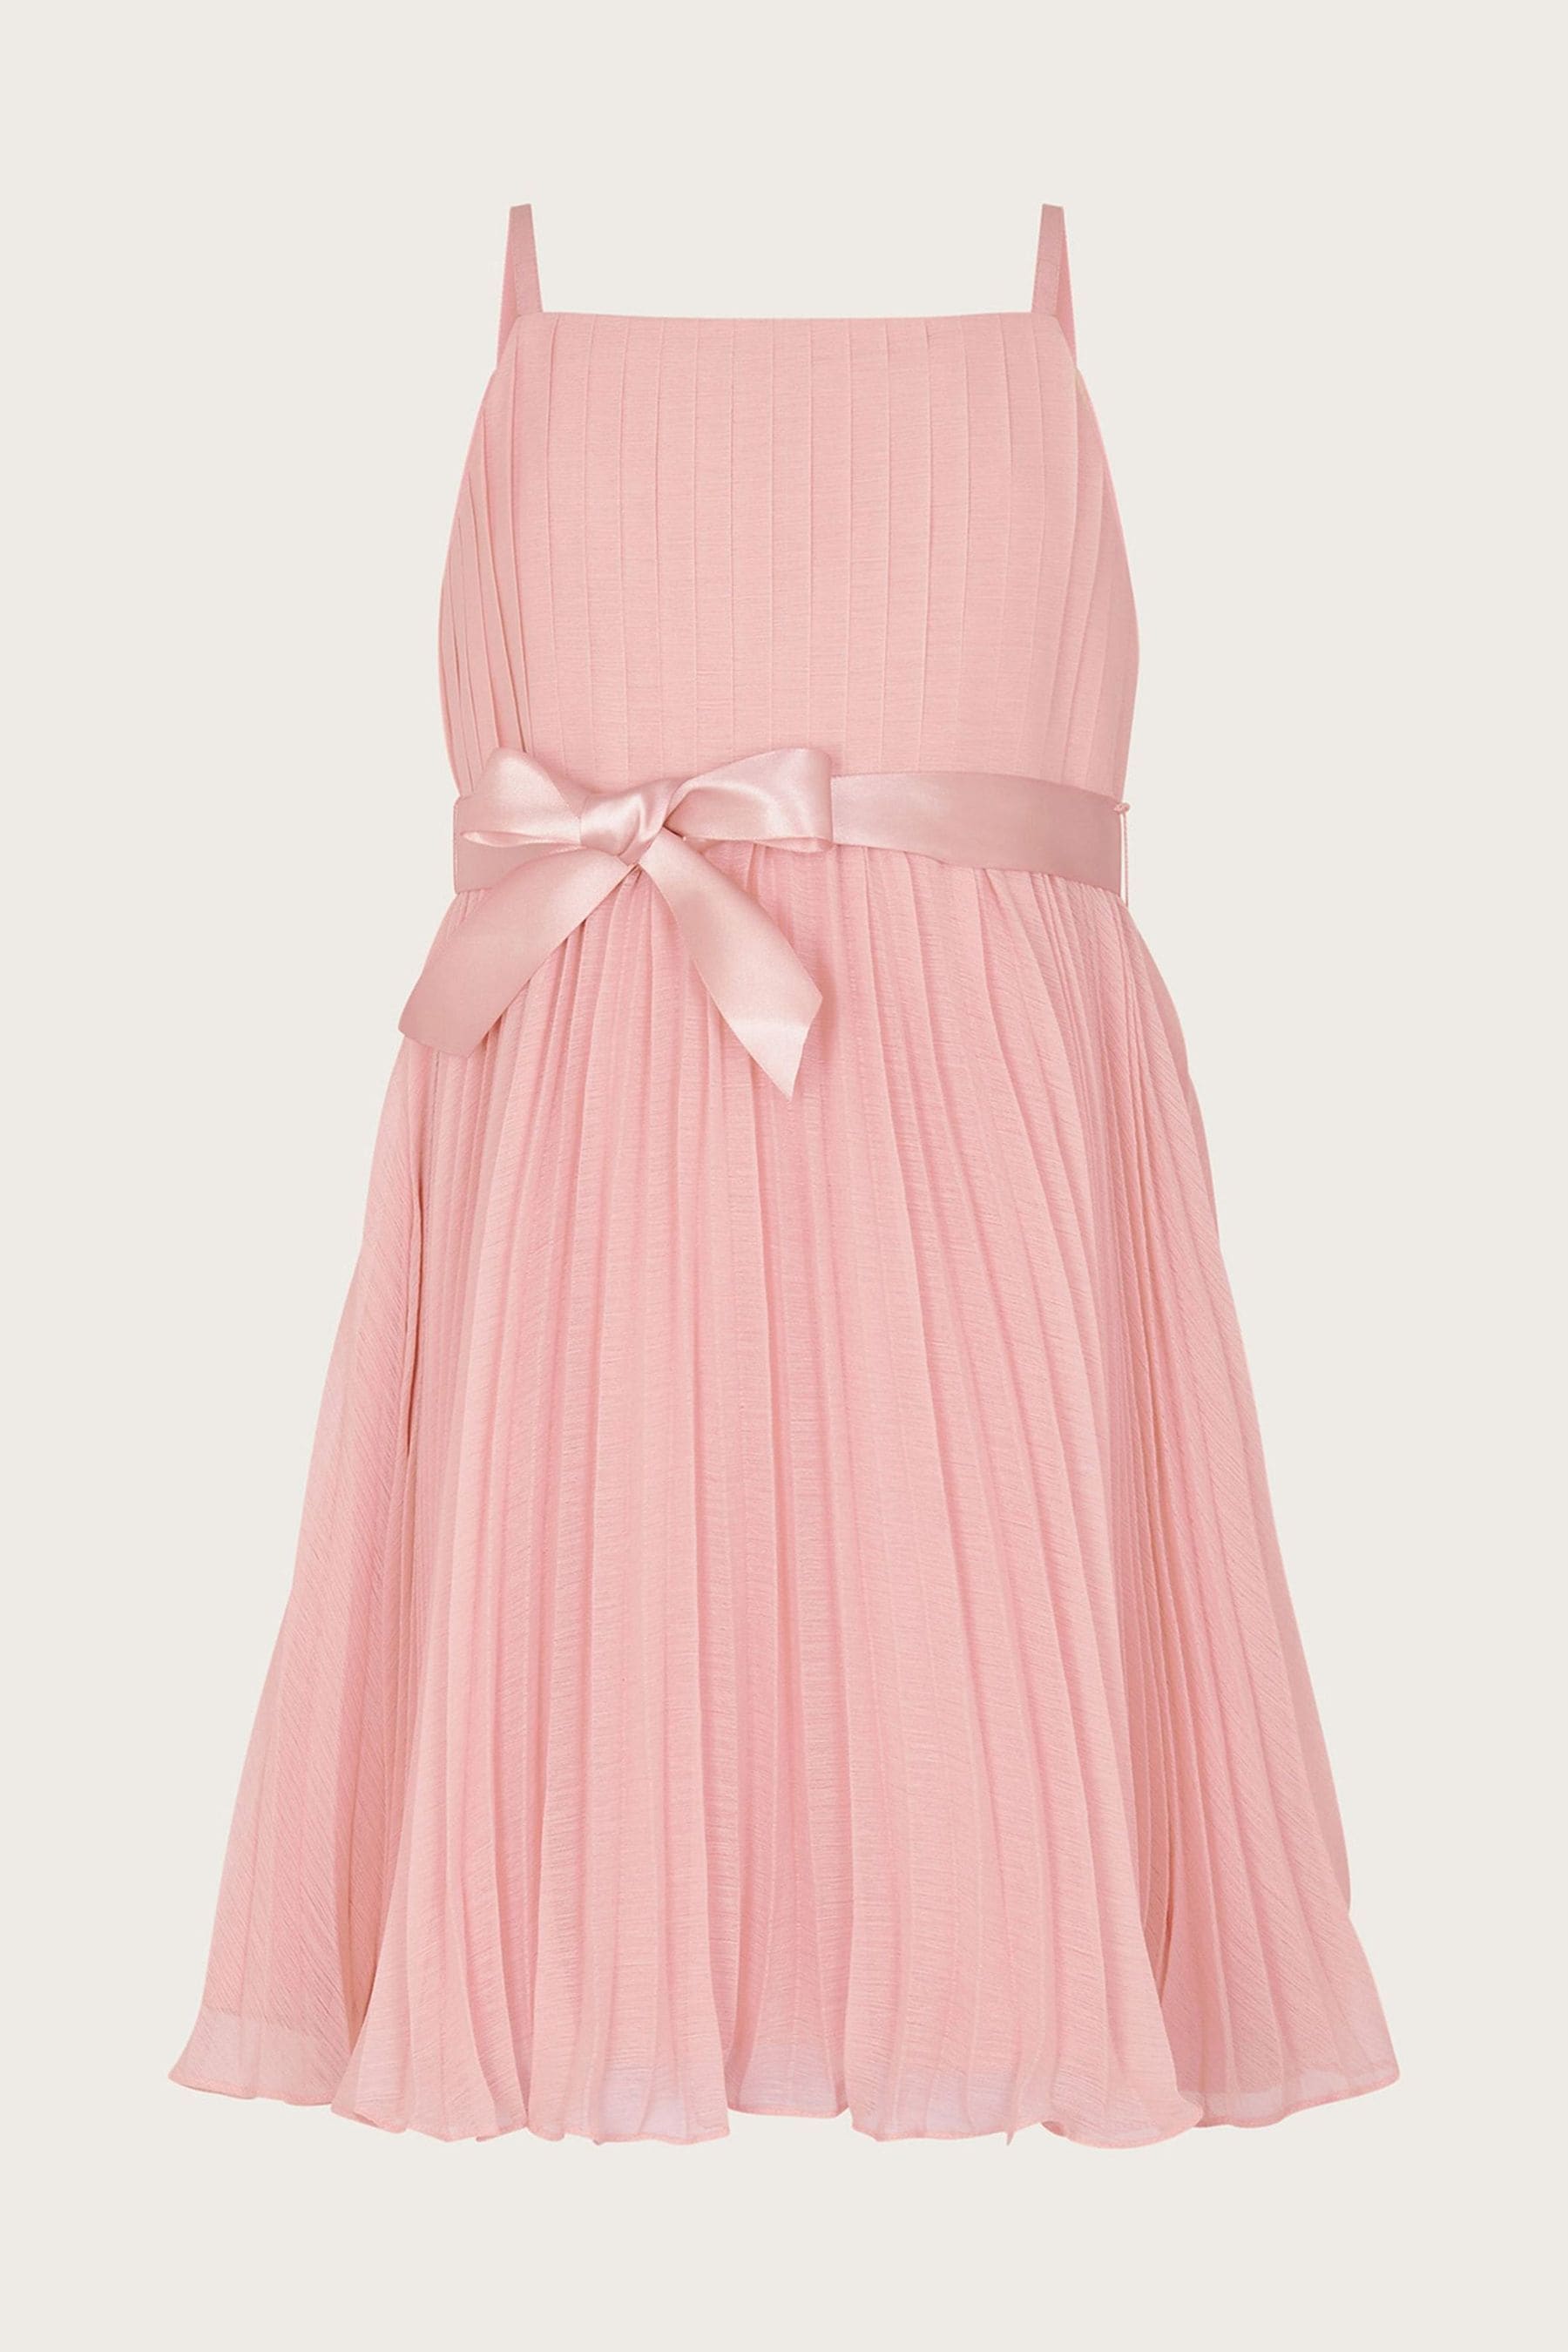 Penelope розовое шифоновое платье со складками Monsoon, розовый